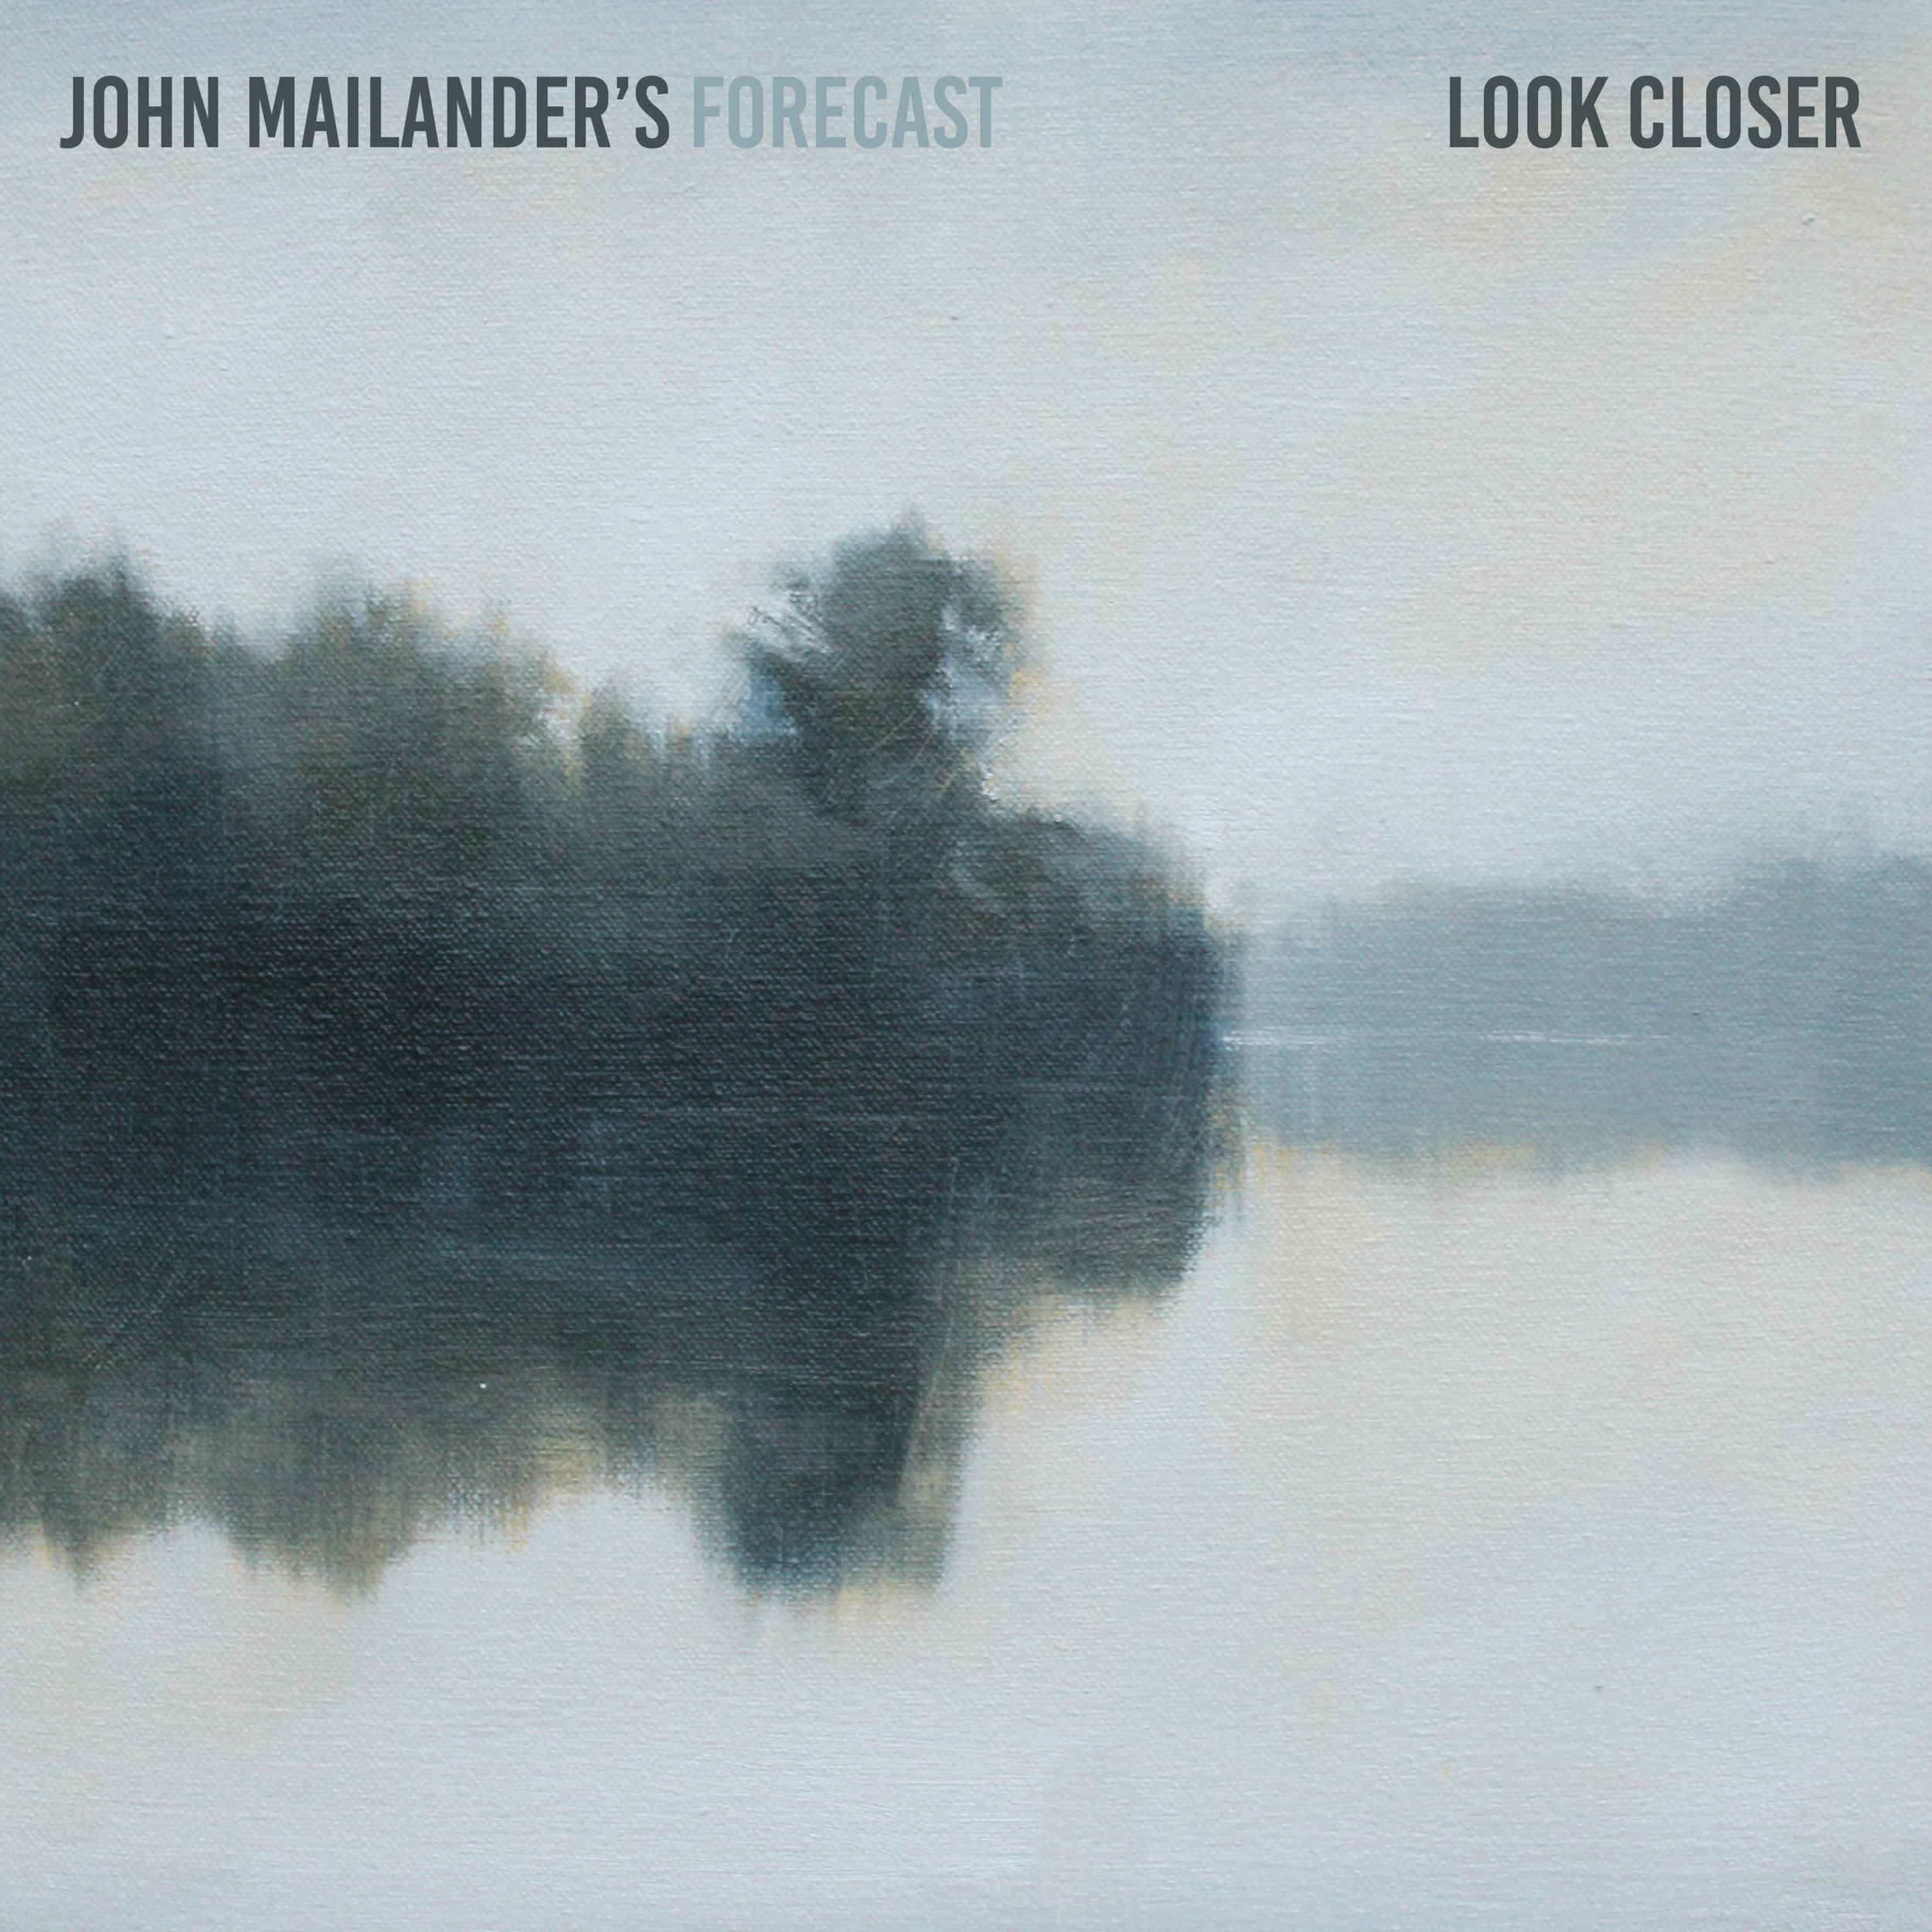 John Mailander's Forecast - Look Closer